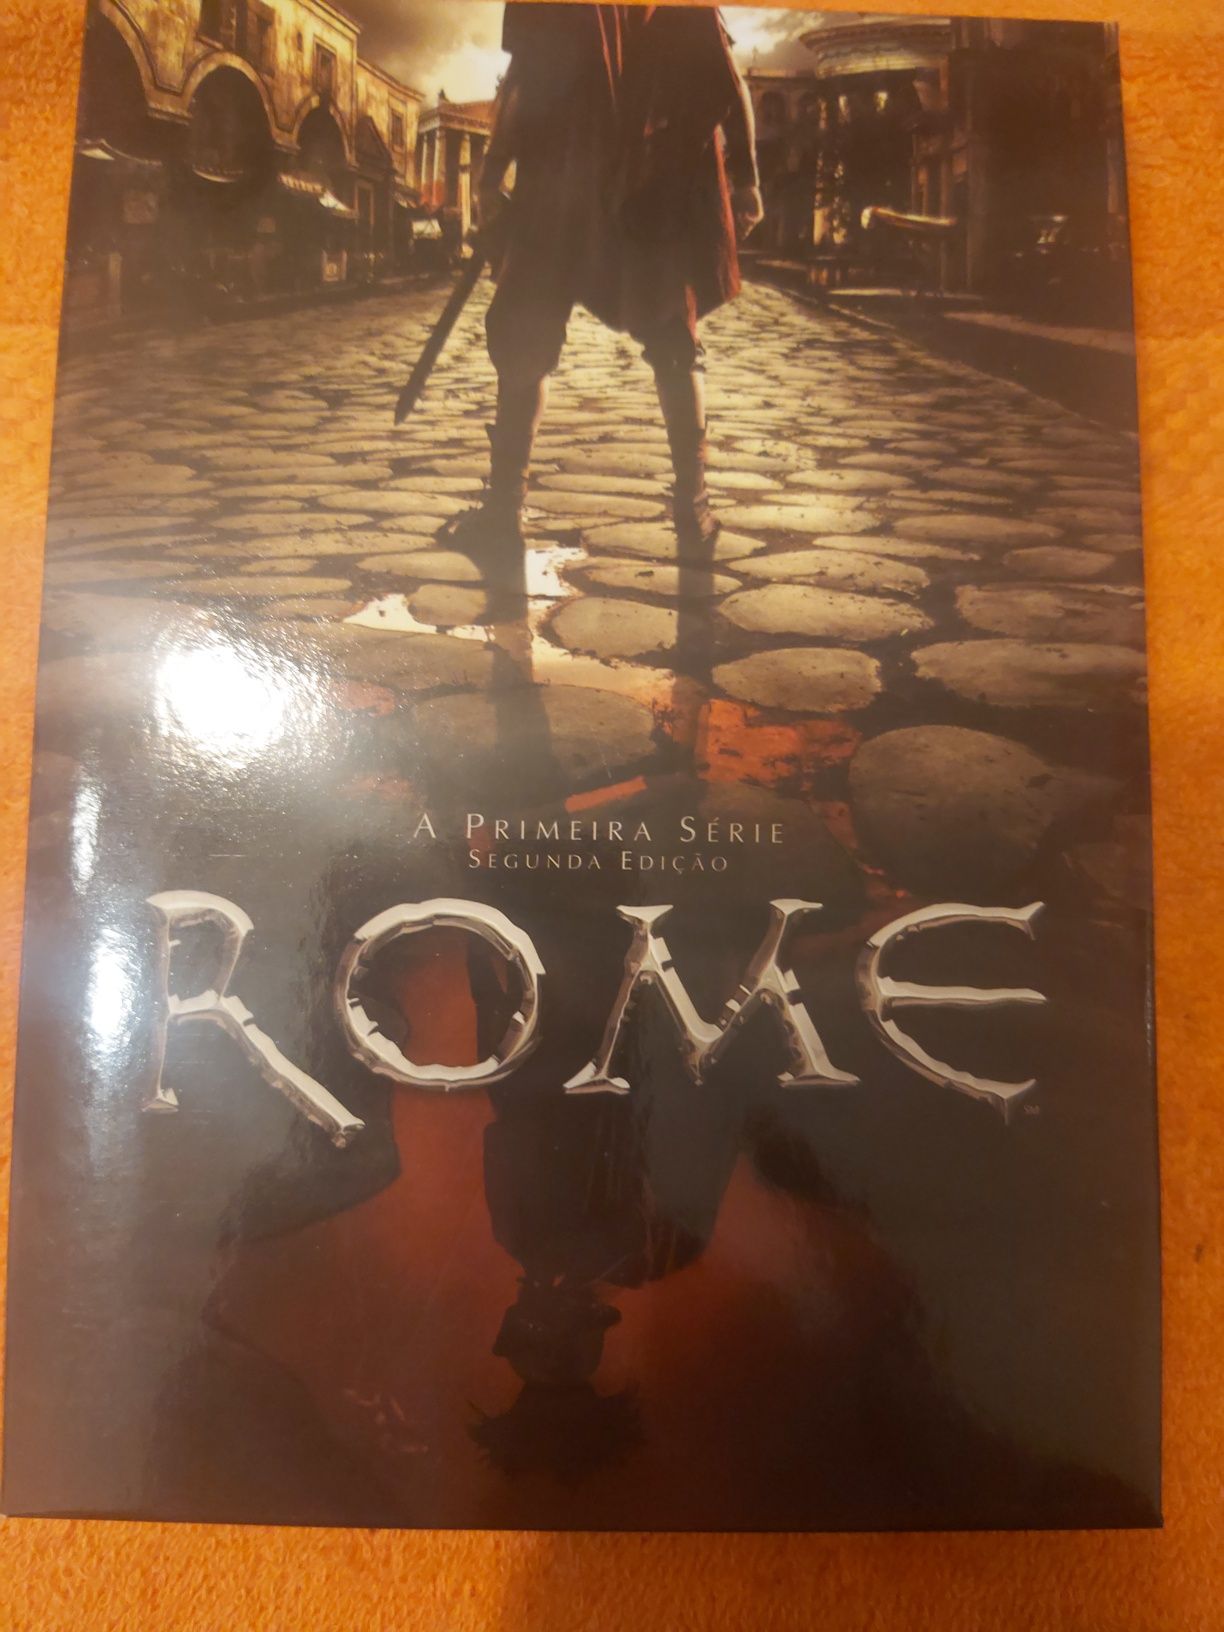 Serie -  Roma /  Rome  Coleção Completa Edição Colecionador edição nac